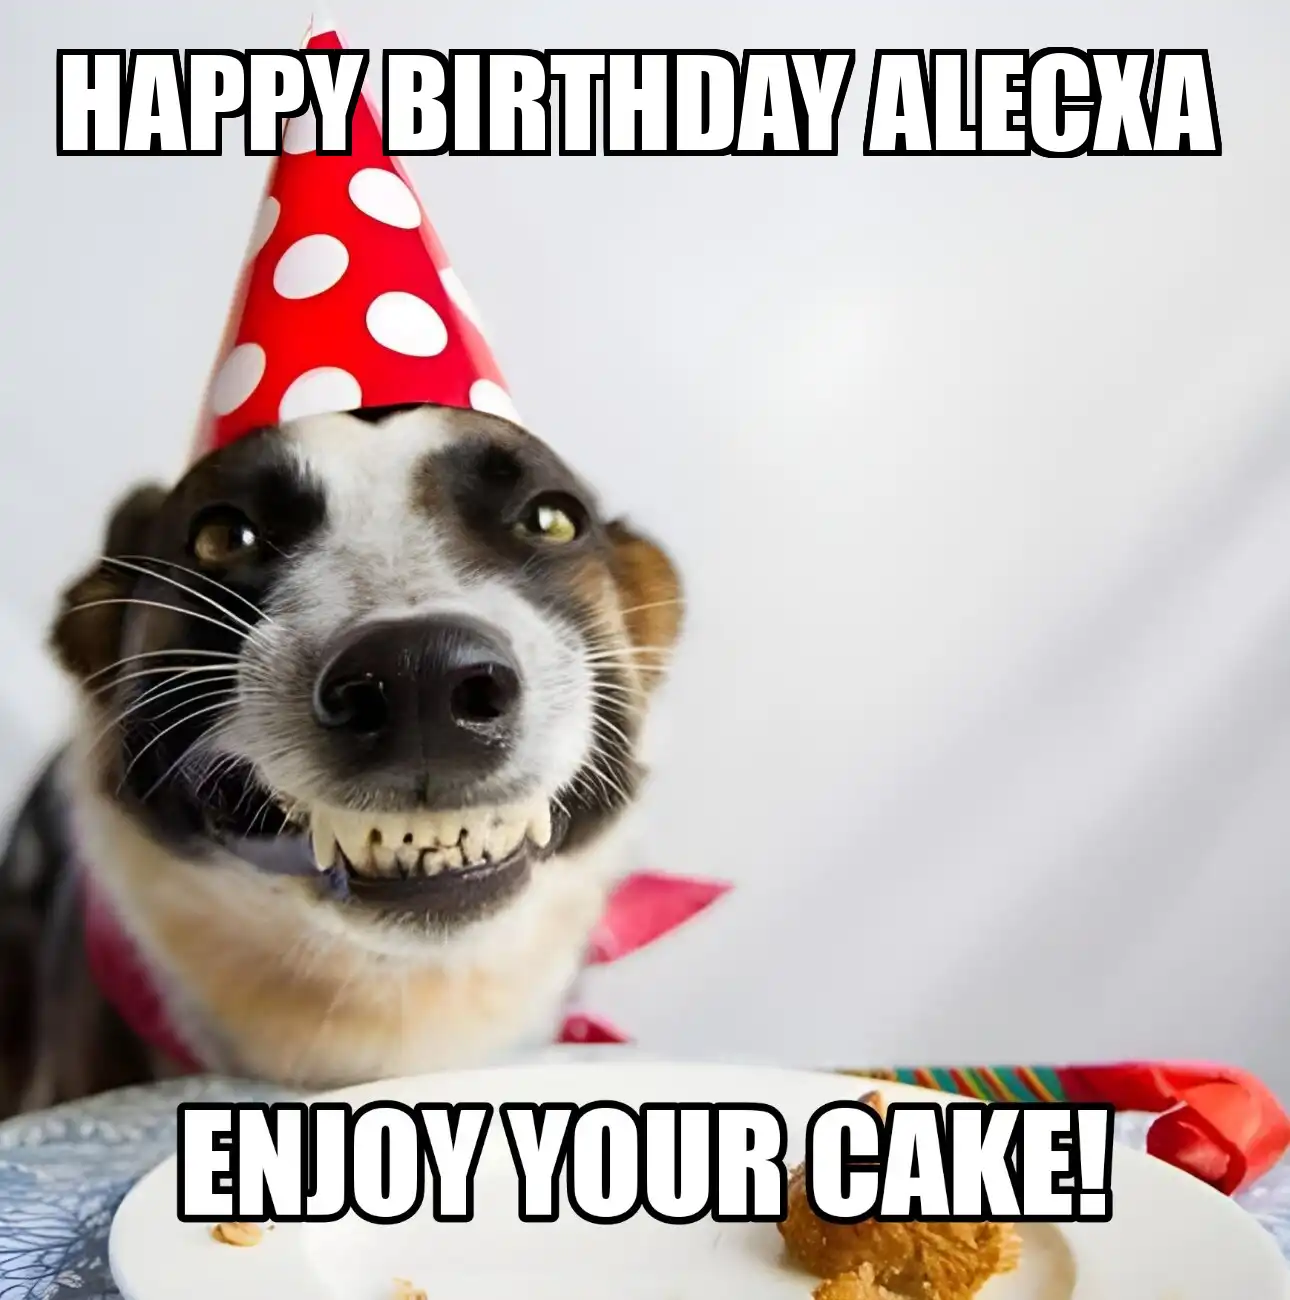 Happy Birthday Alecxa Enjoy Your Cake Dog Meme